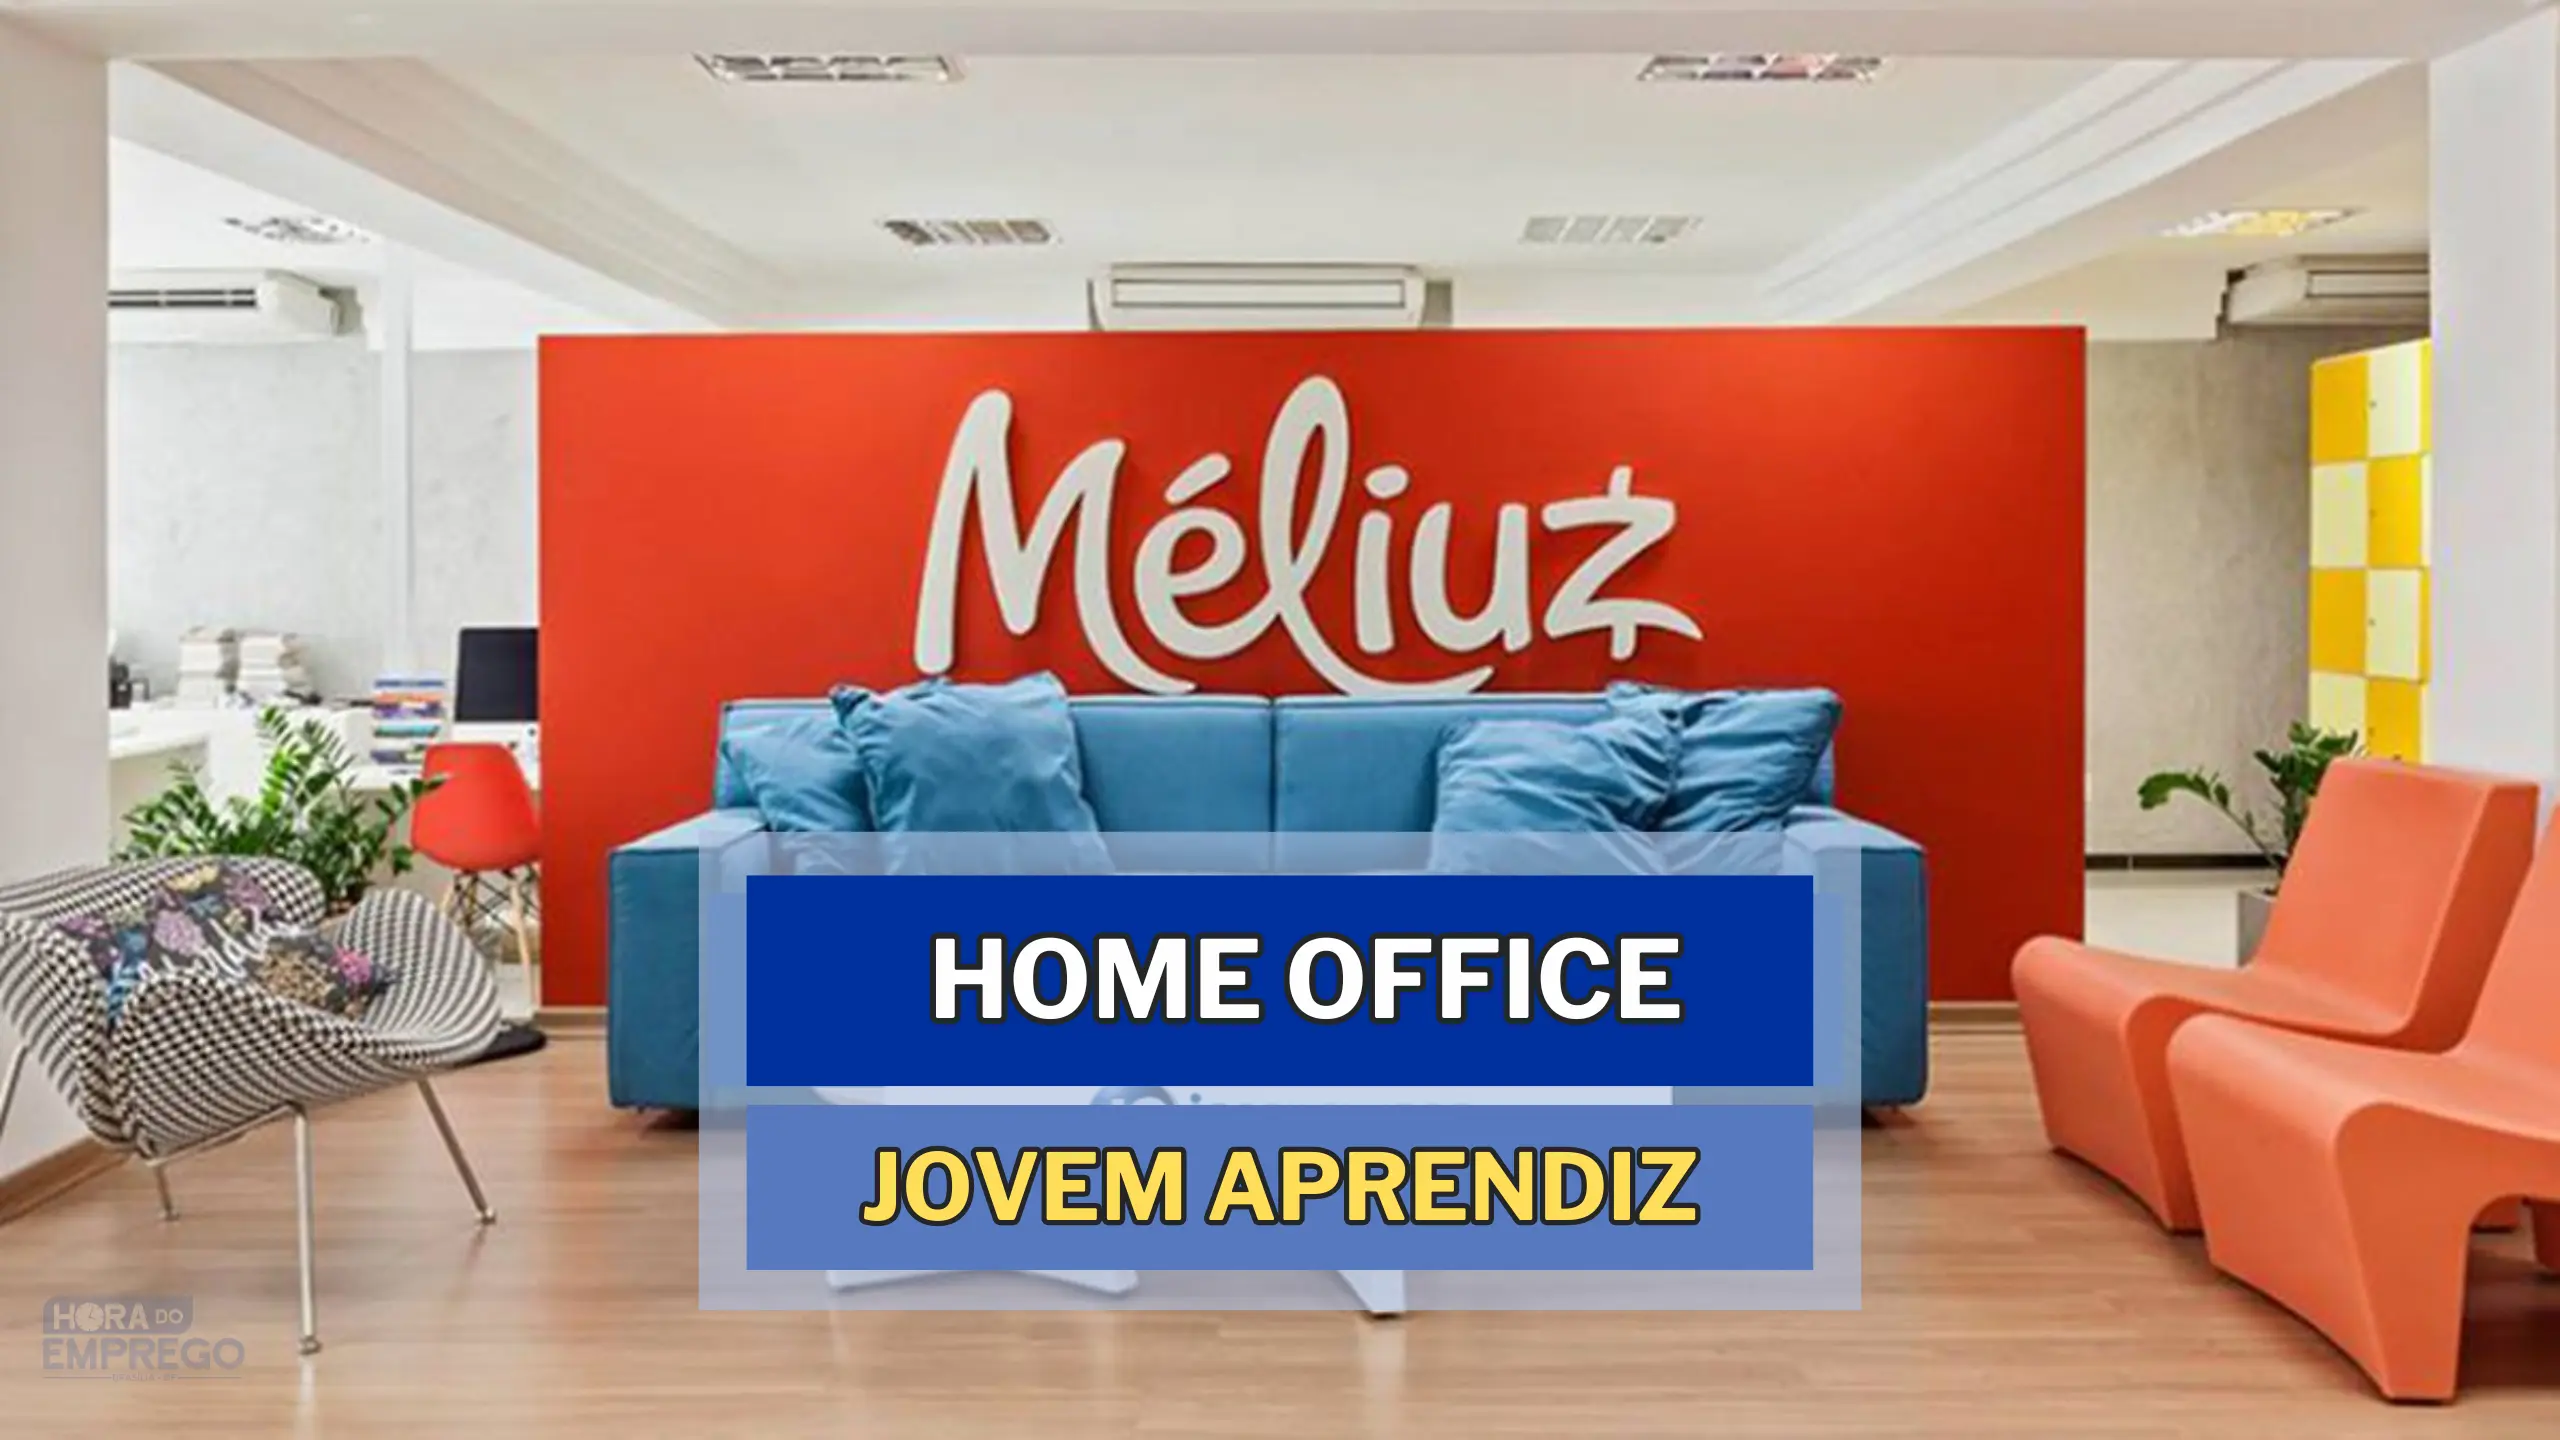 Jovem Aprendiz Home Office: Méliuz abriu vaga HOME OFFICE para TRABALHAR DE CASA como Aprendiz de Recursos Humanos